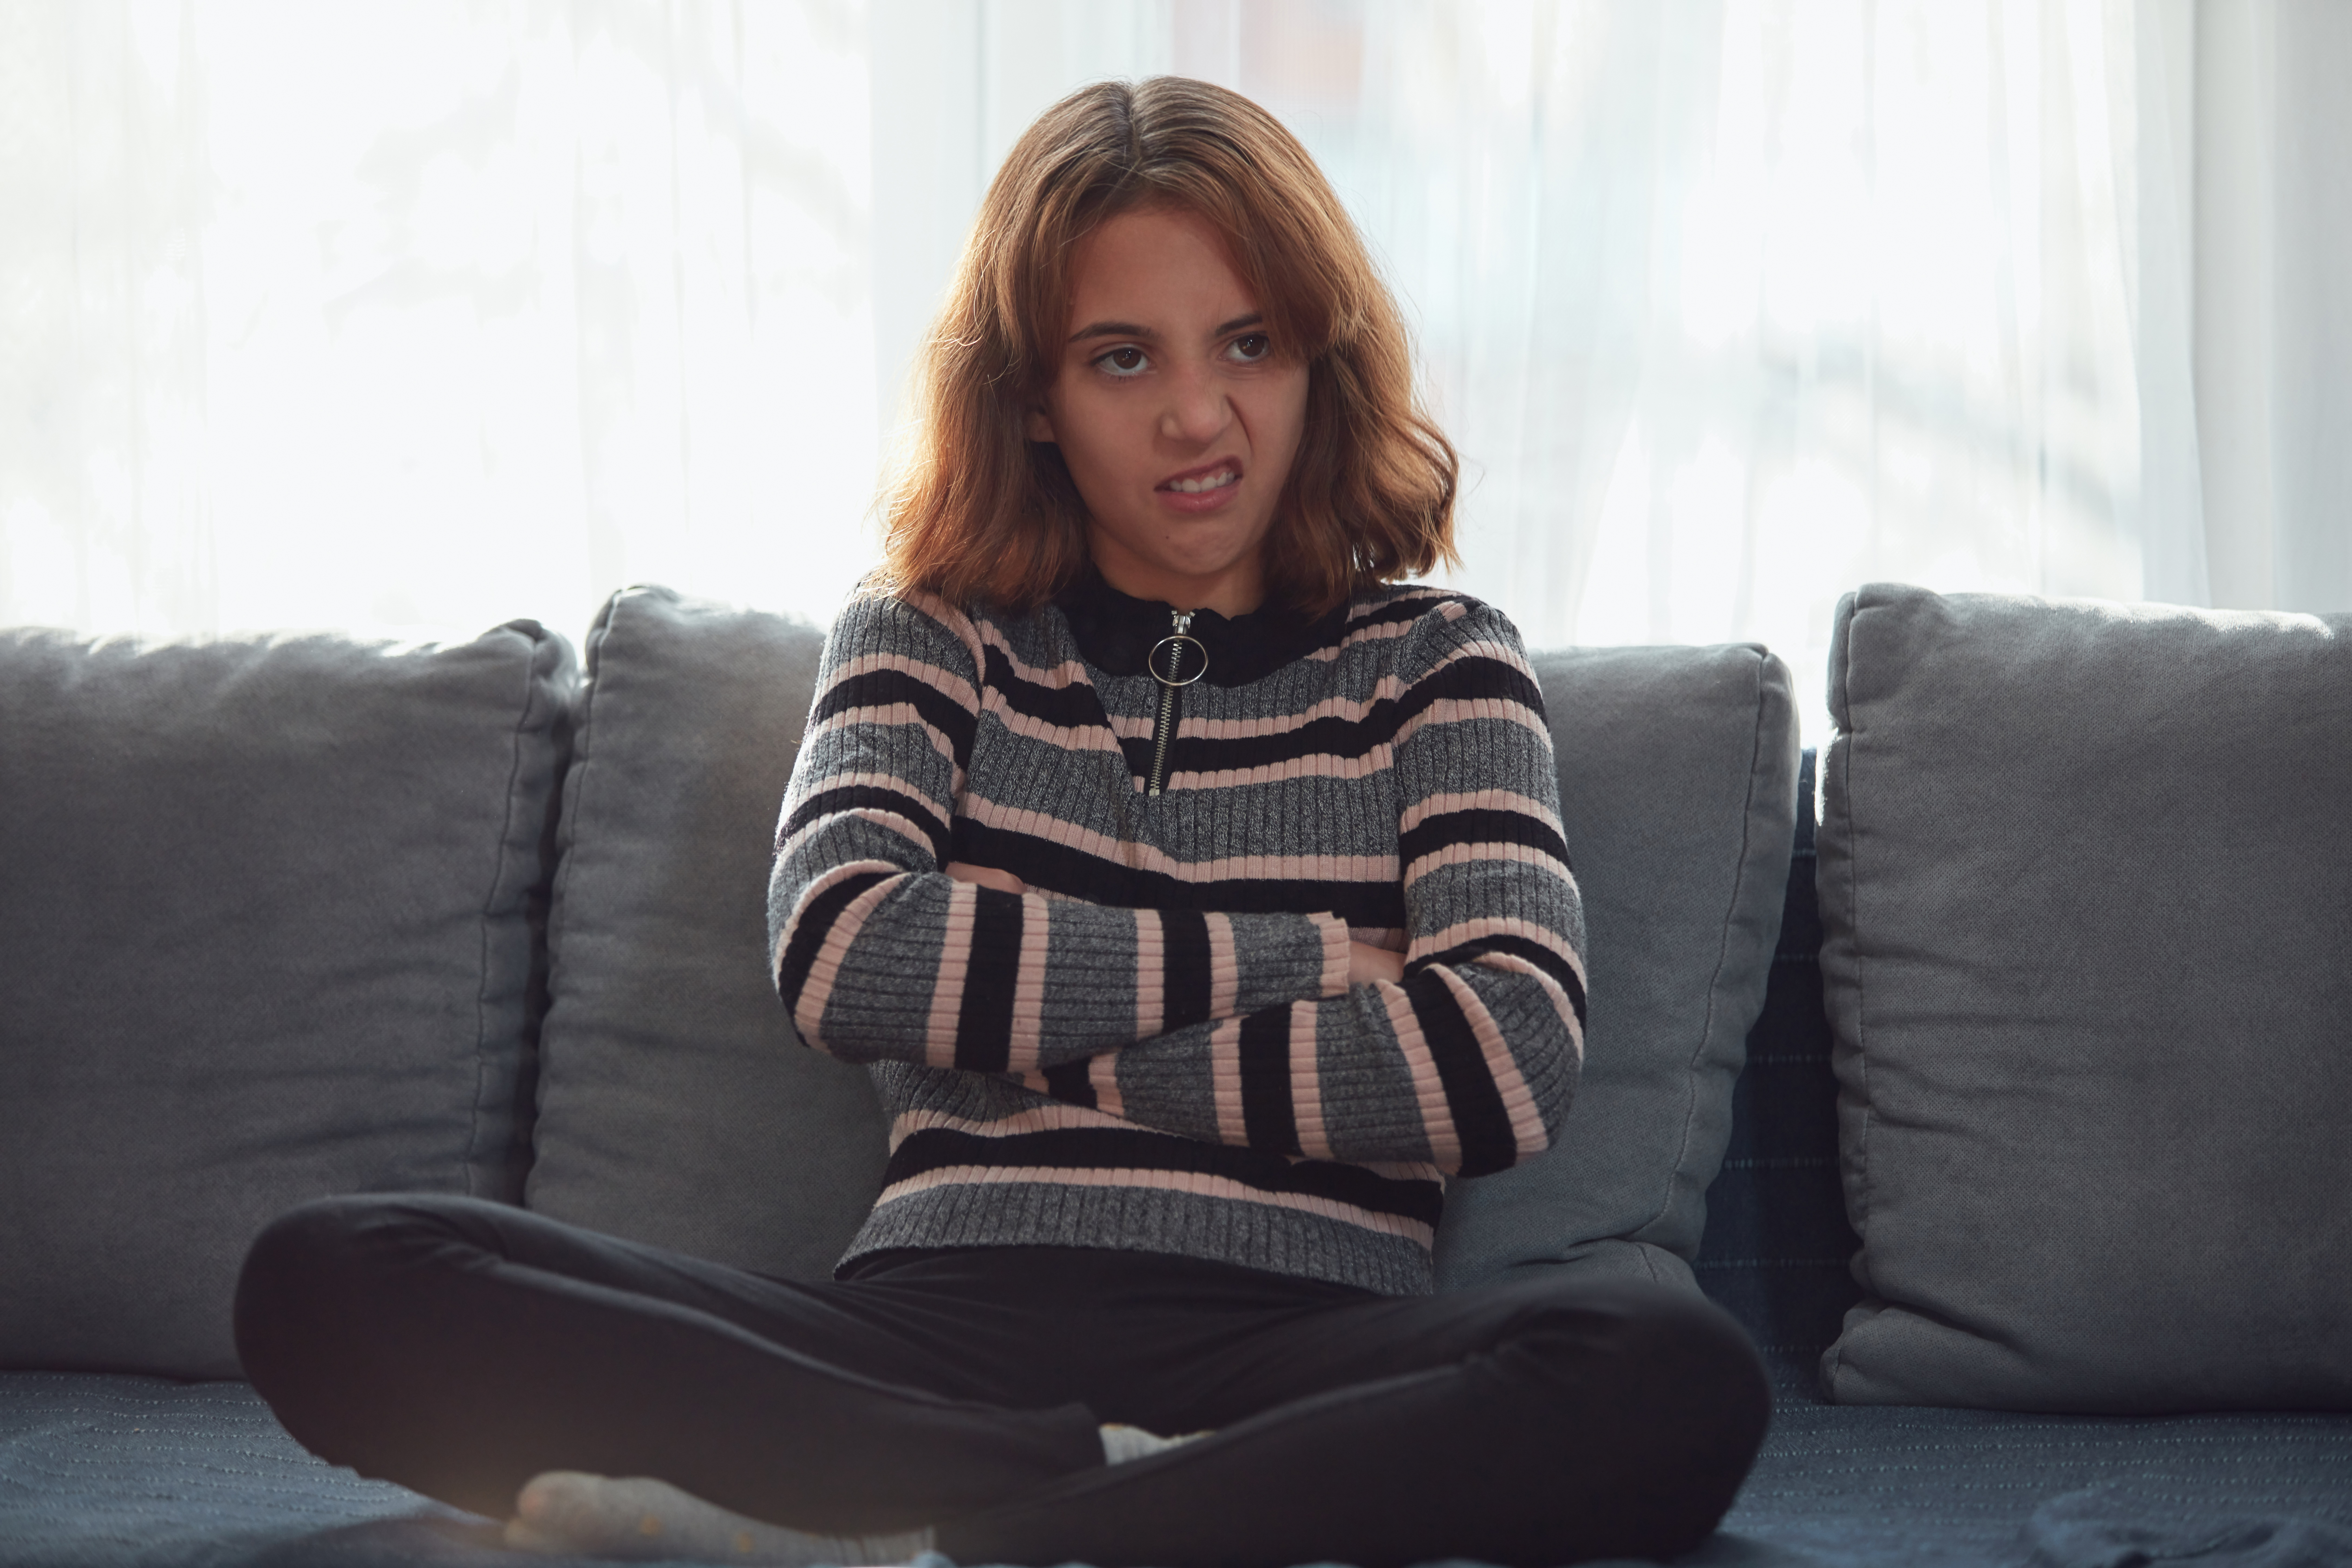 Adolescente s'ennuyant et difficile à la maison. | Source : Getty Images